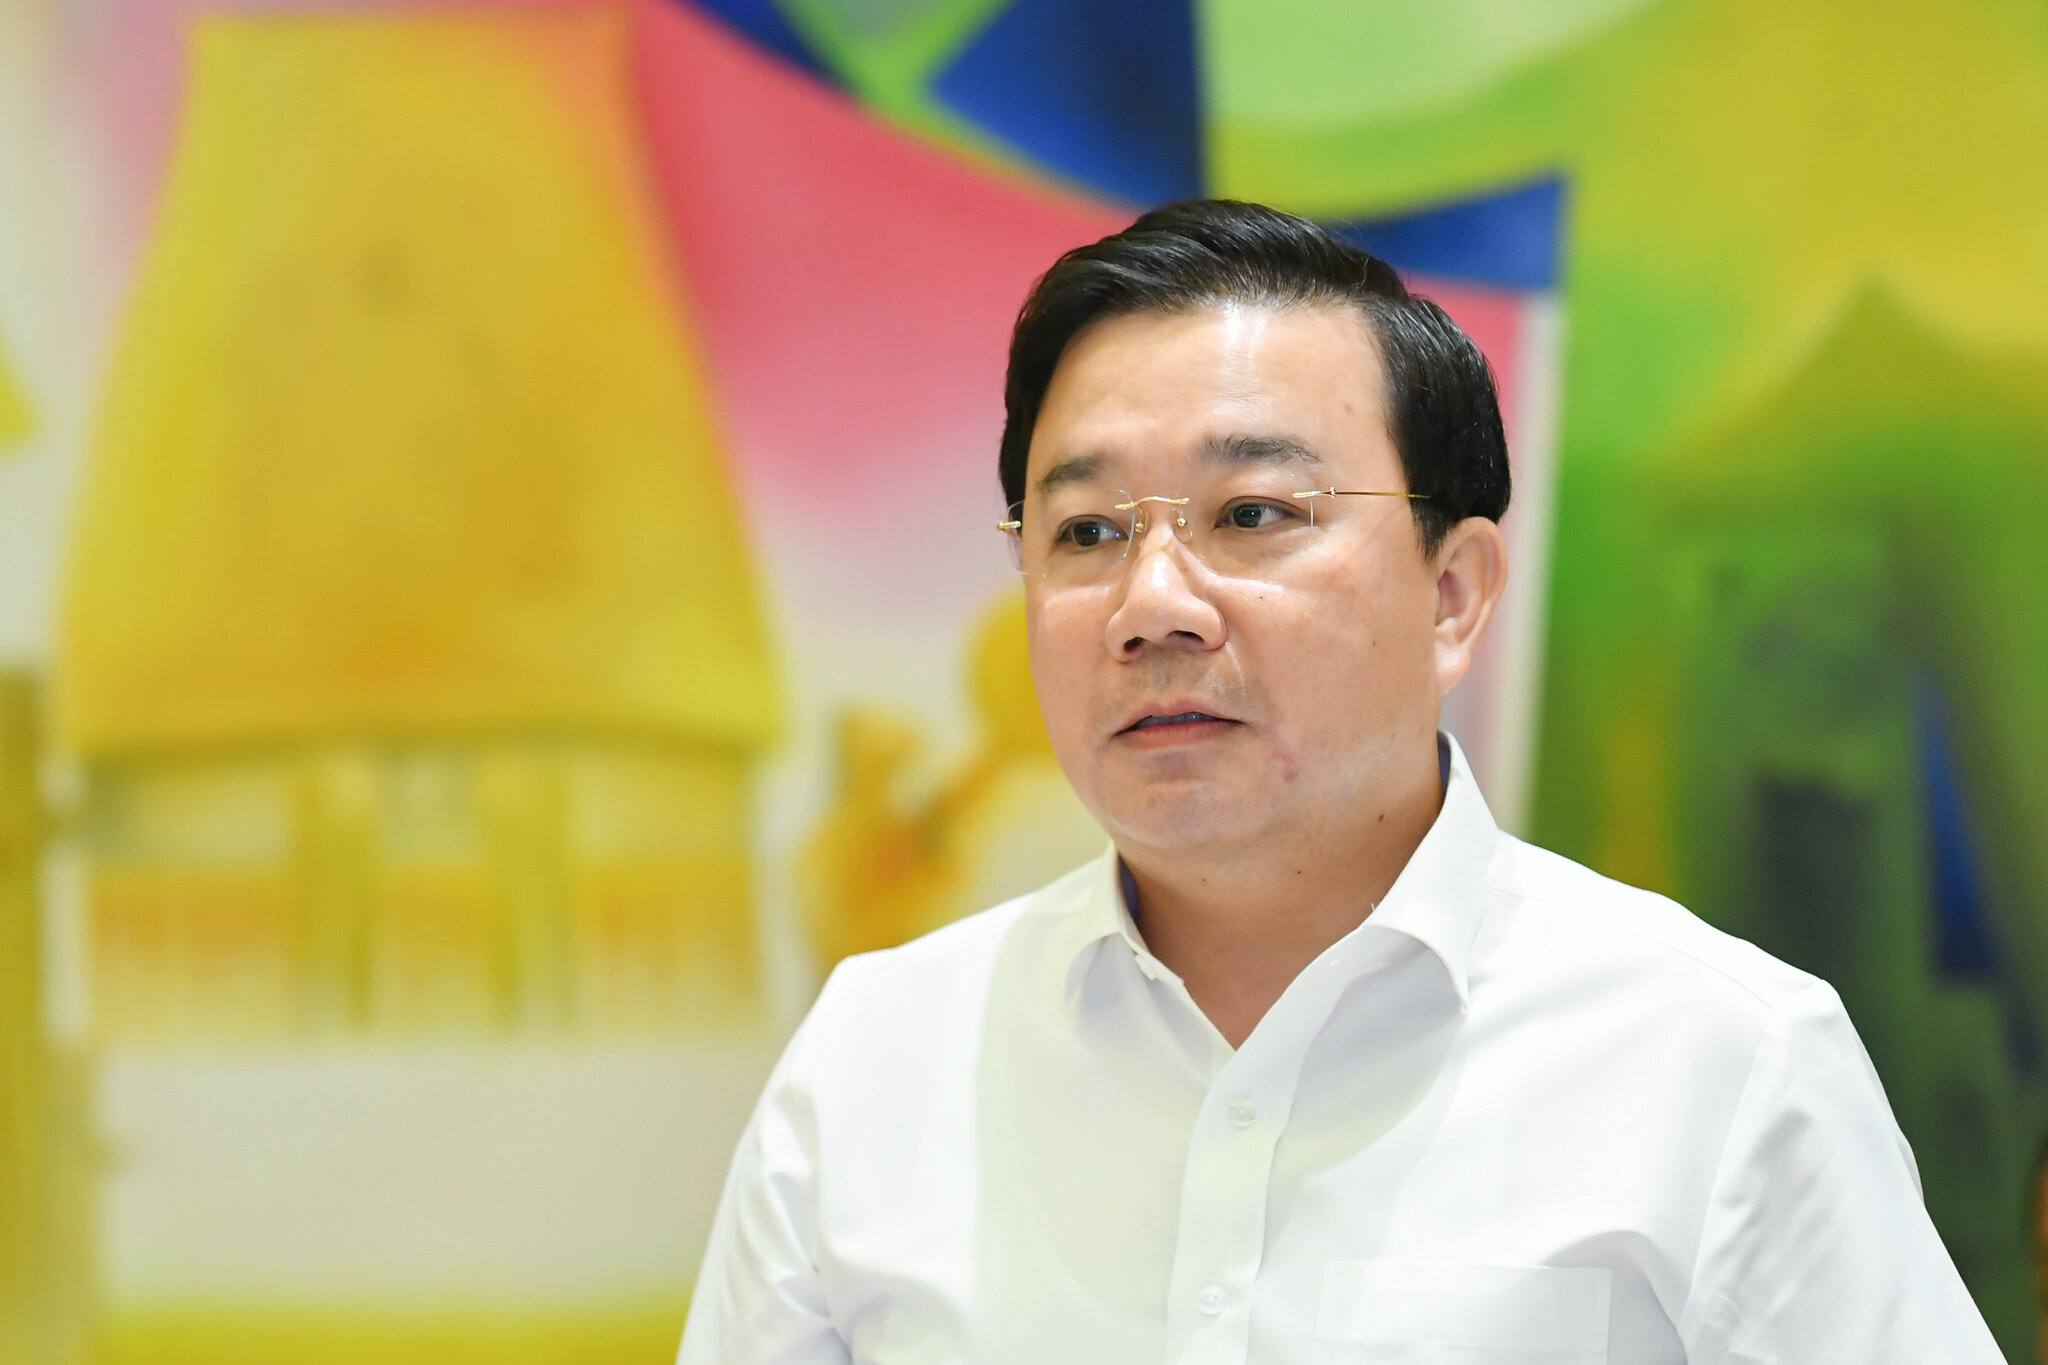 Cựu Phó Chủ tịch Hà Nội Chử Xuân Dũng bị cáo buộc nhận hối lộ 2 tỷ đồng - 1